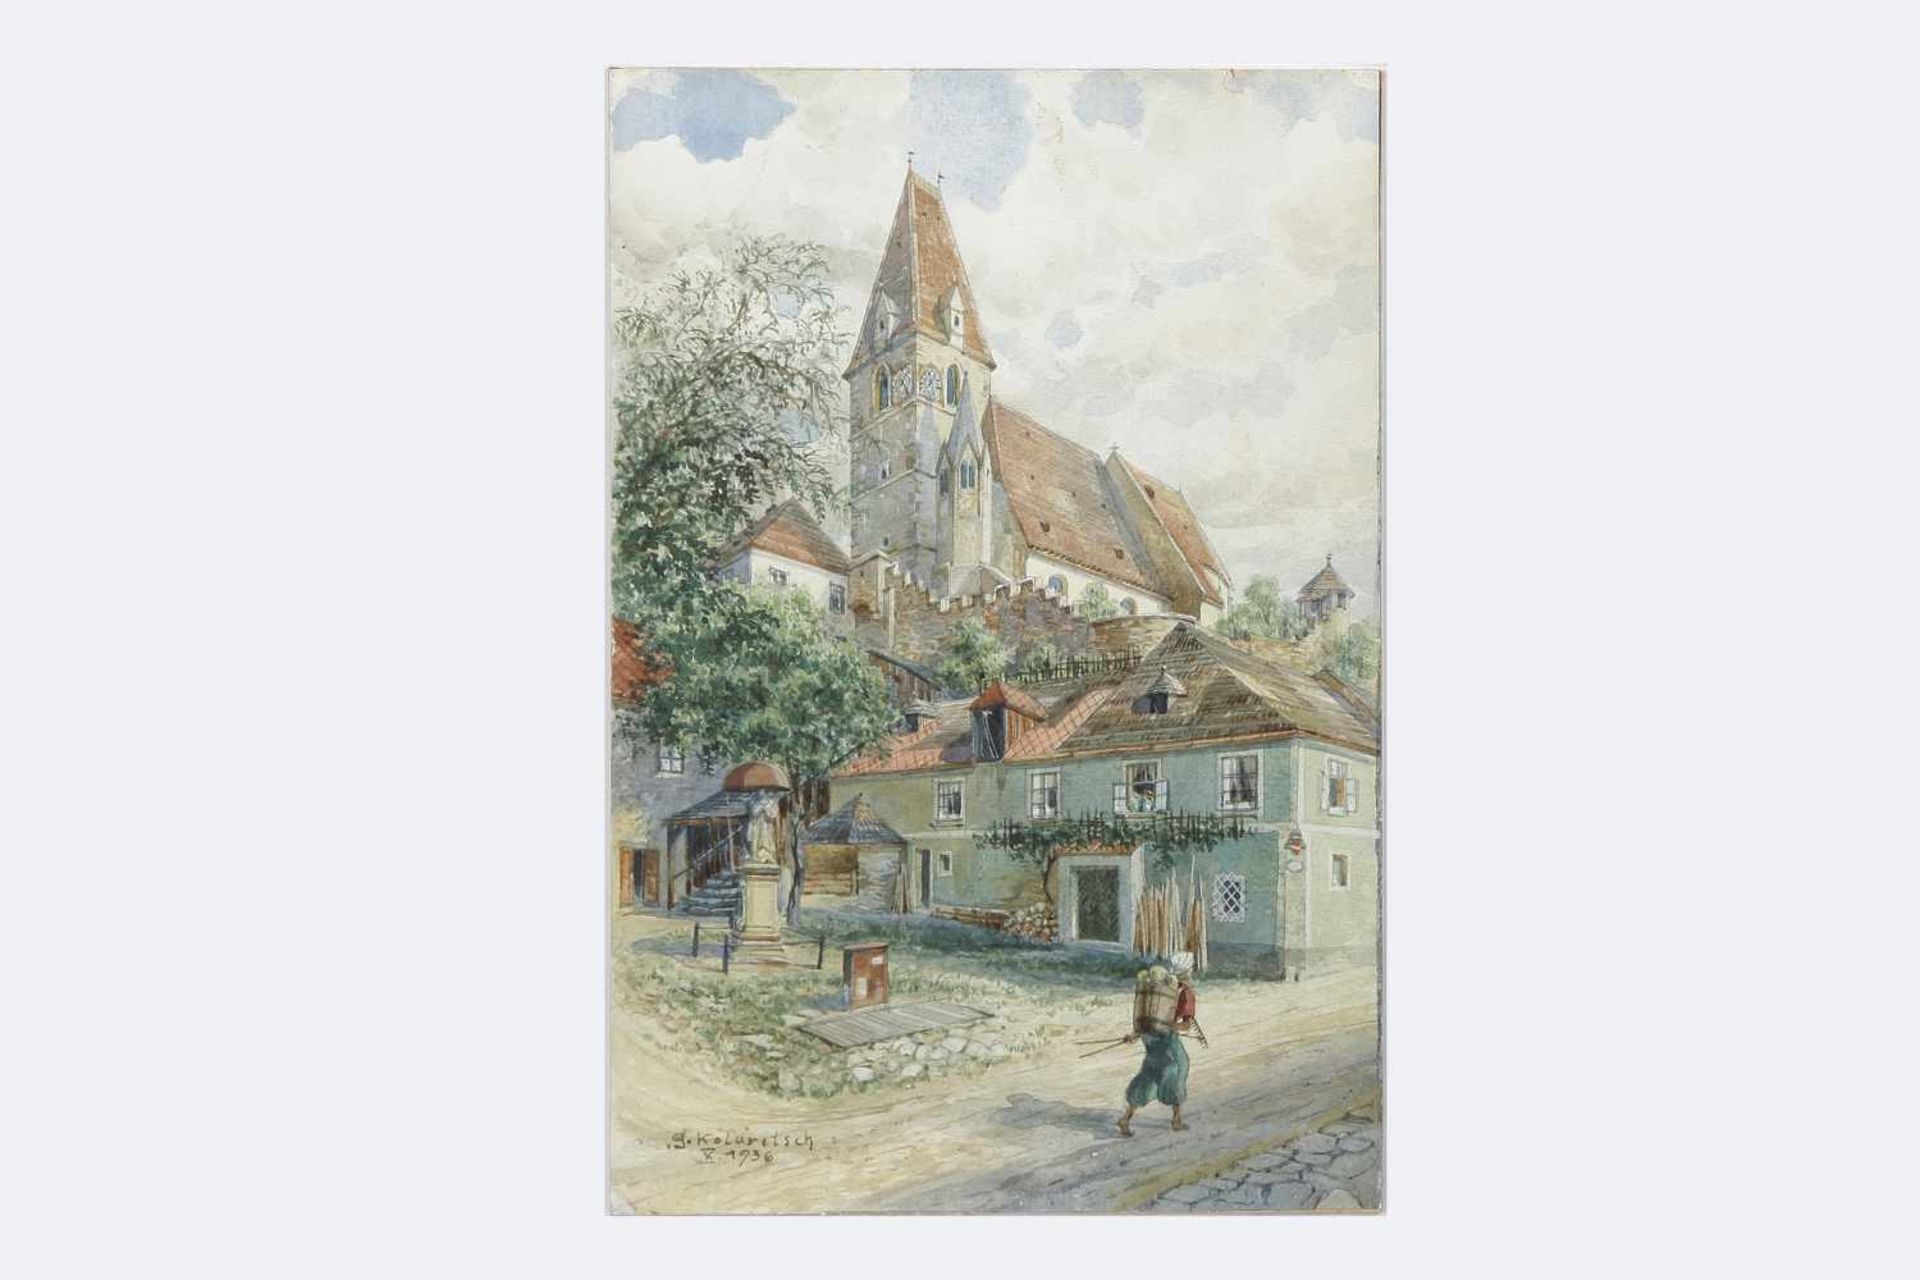 Gustav Kolaritsch signiert,Blick auf die Kirche, sign. G. Kolaritsch, dat. X. 1936, Aquarell auf